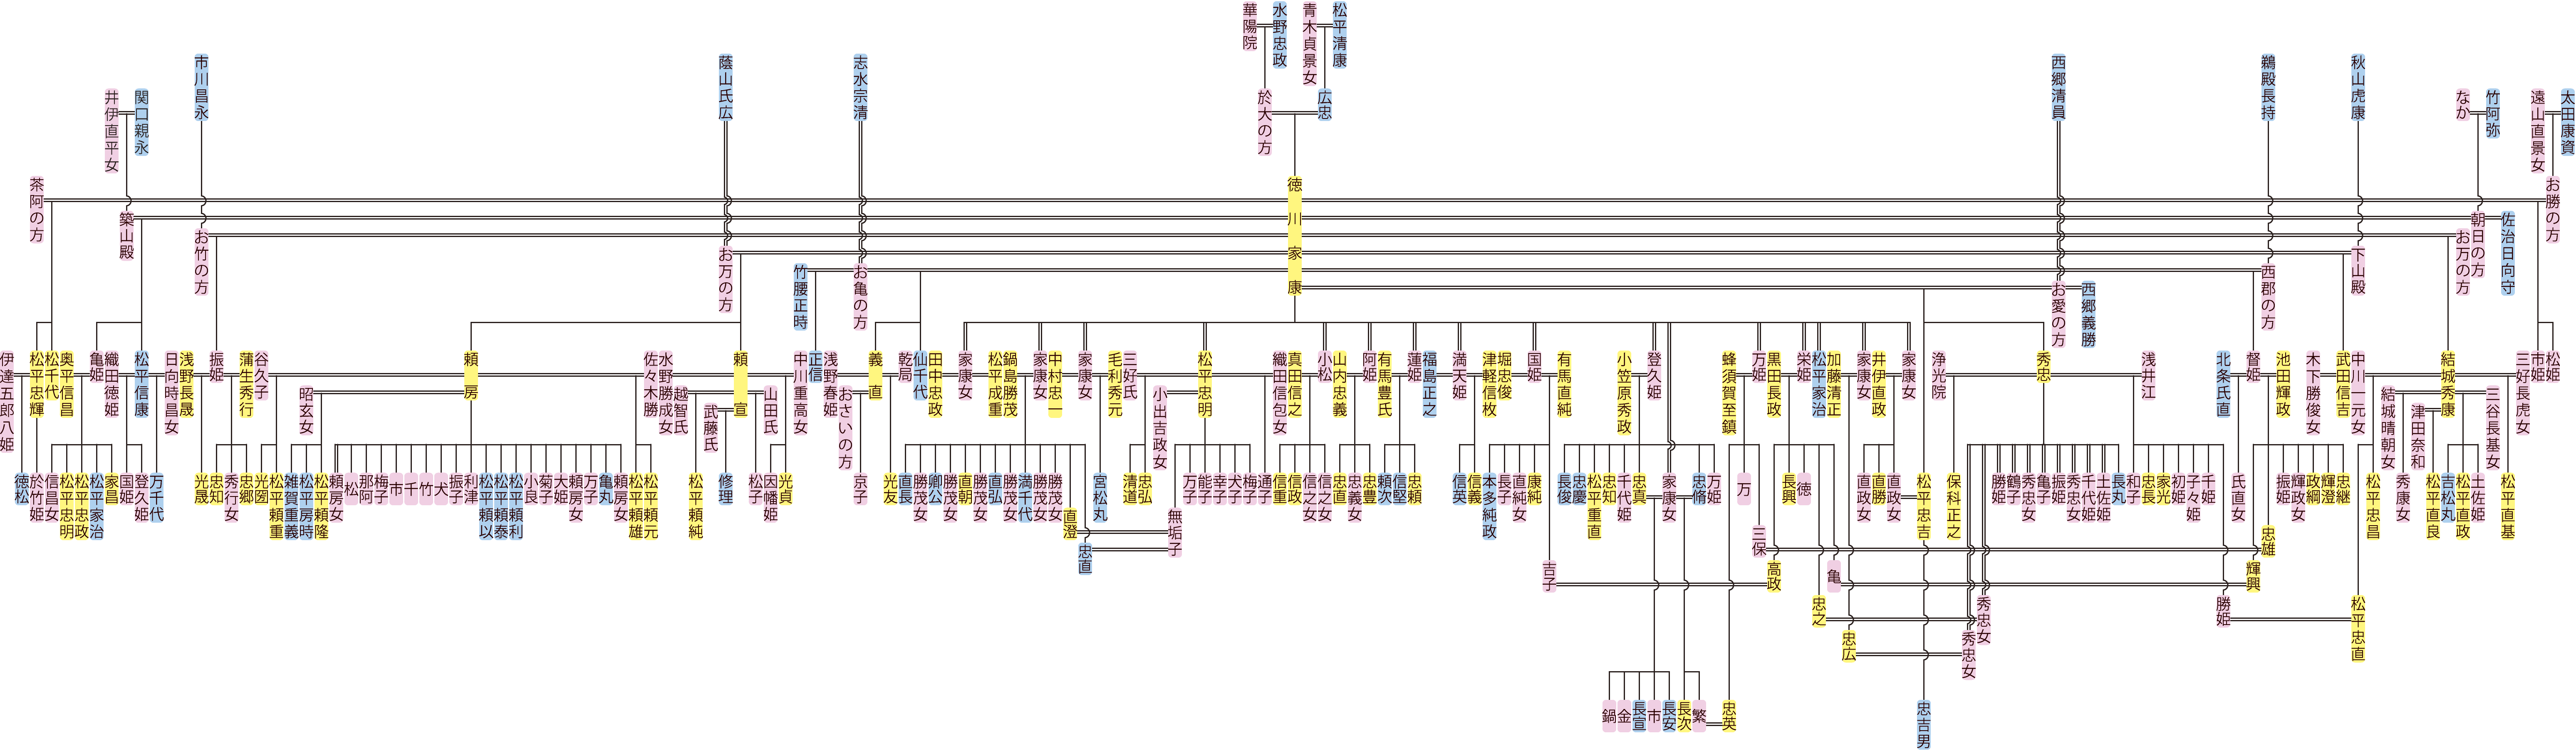 徳川家康の系図